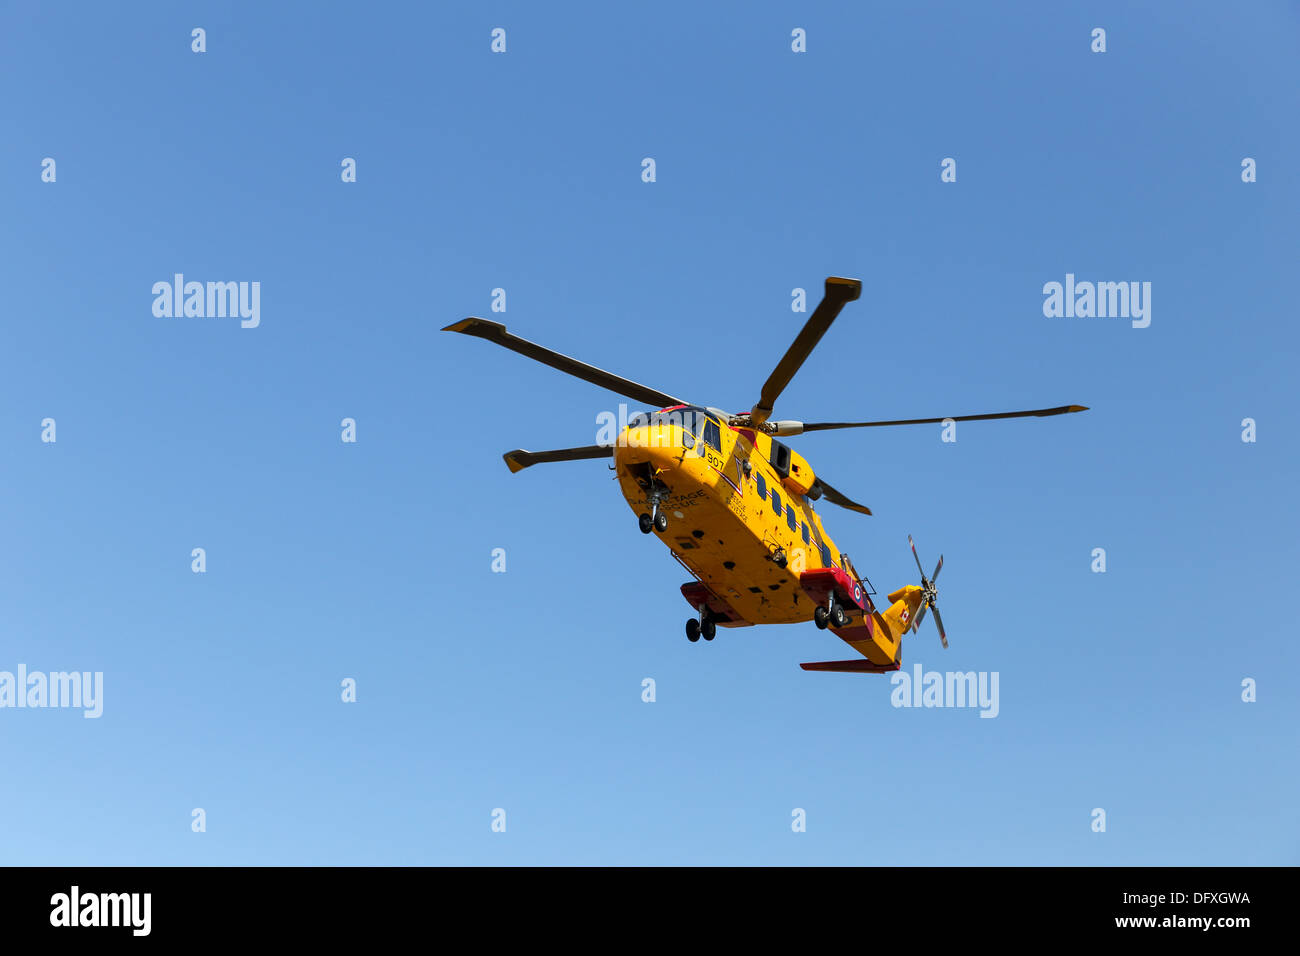 Forze canadesi AgustaWestland CH-149 Cormorant elicottero decrescente - Nessuna vendita su Alamy o in qualsiasi altro luogo Foto Stock